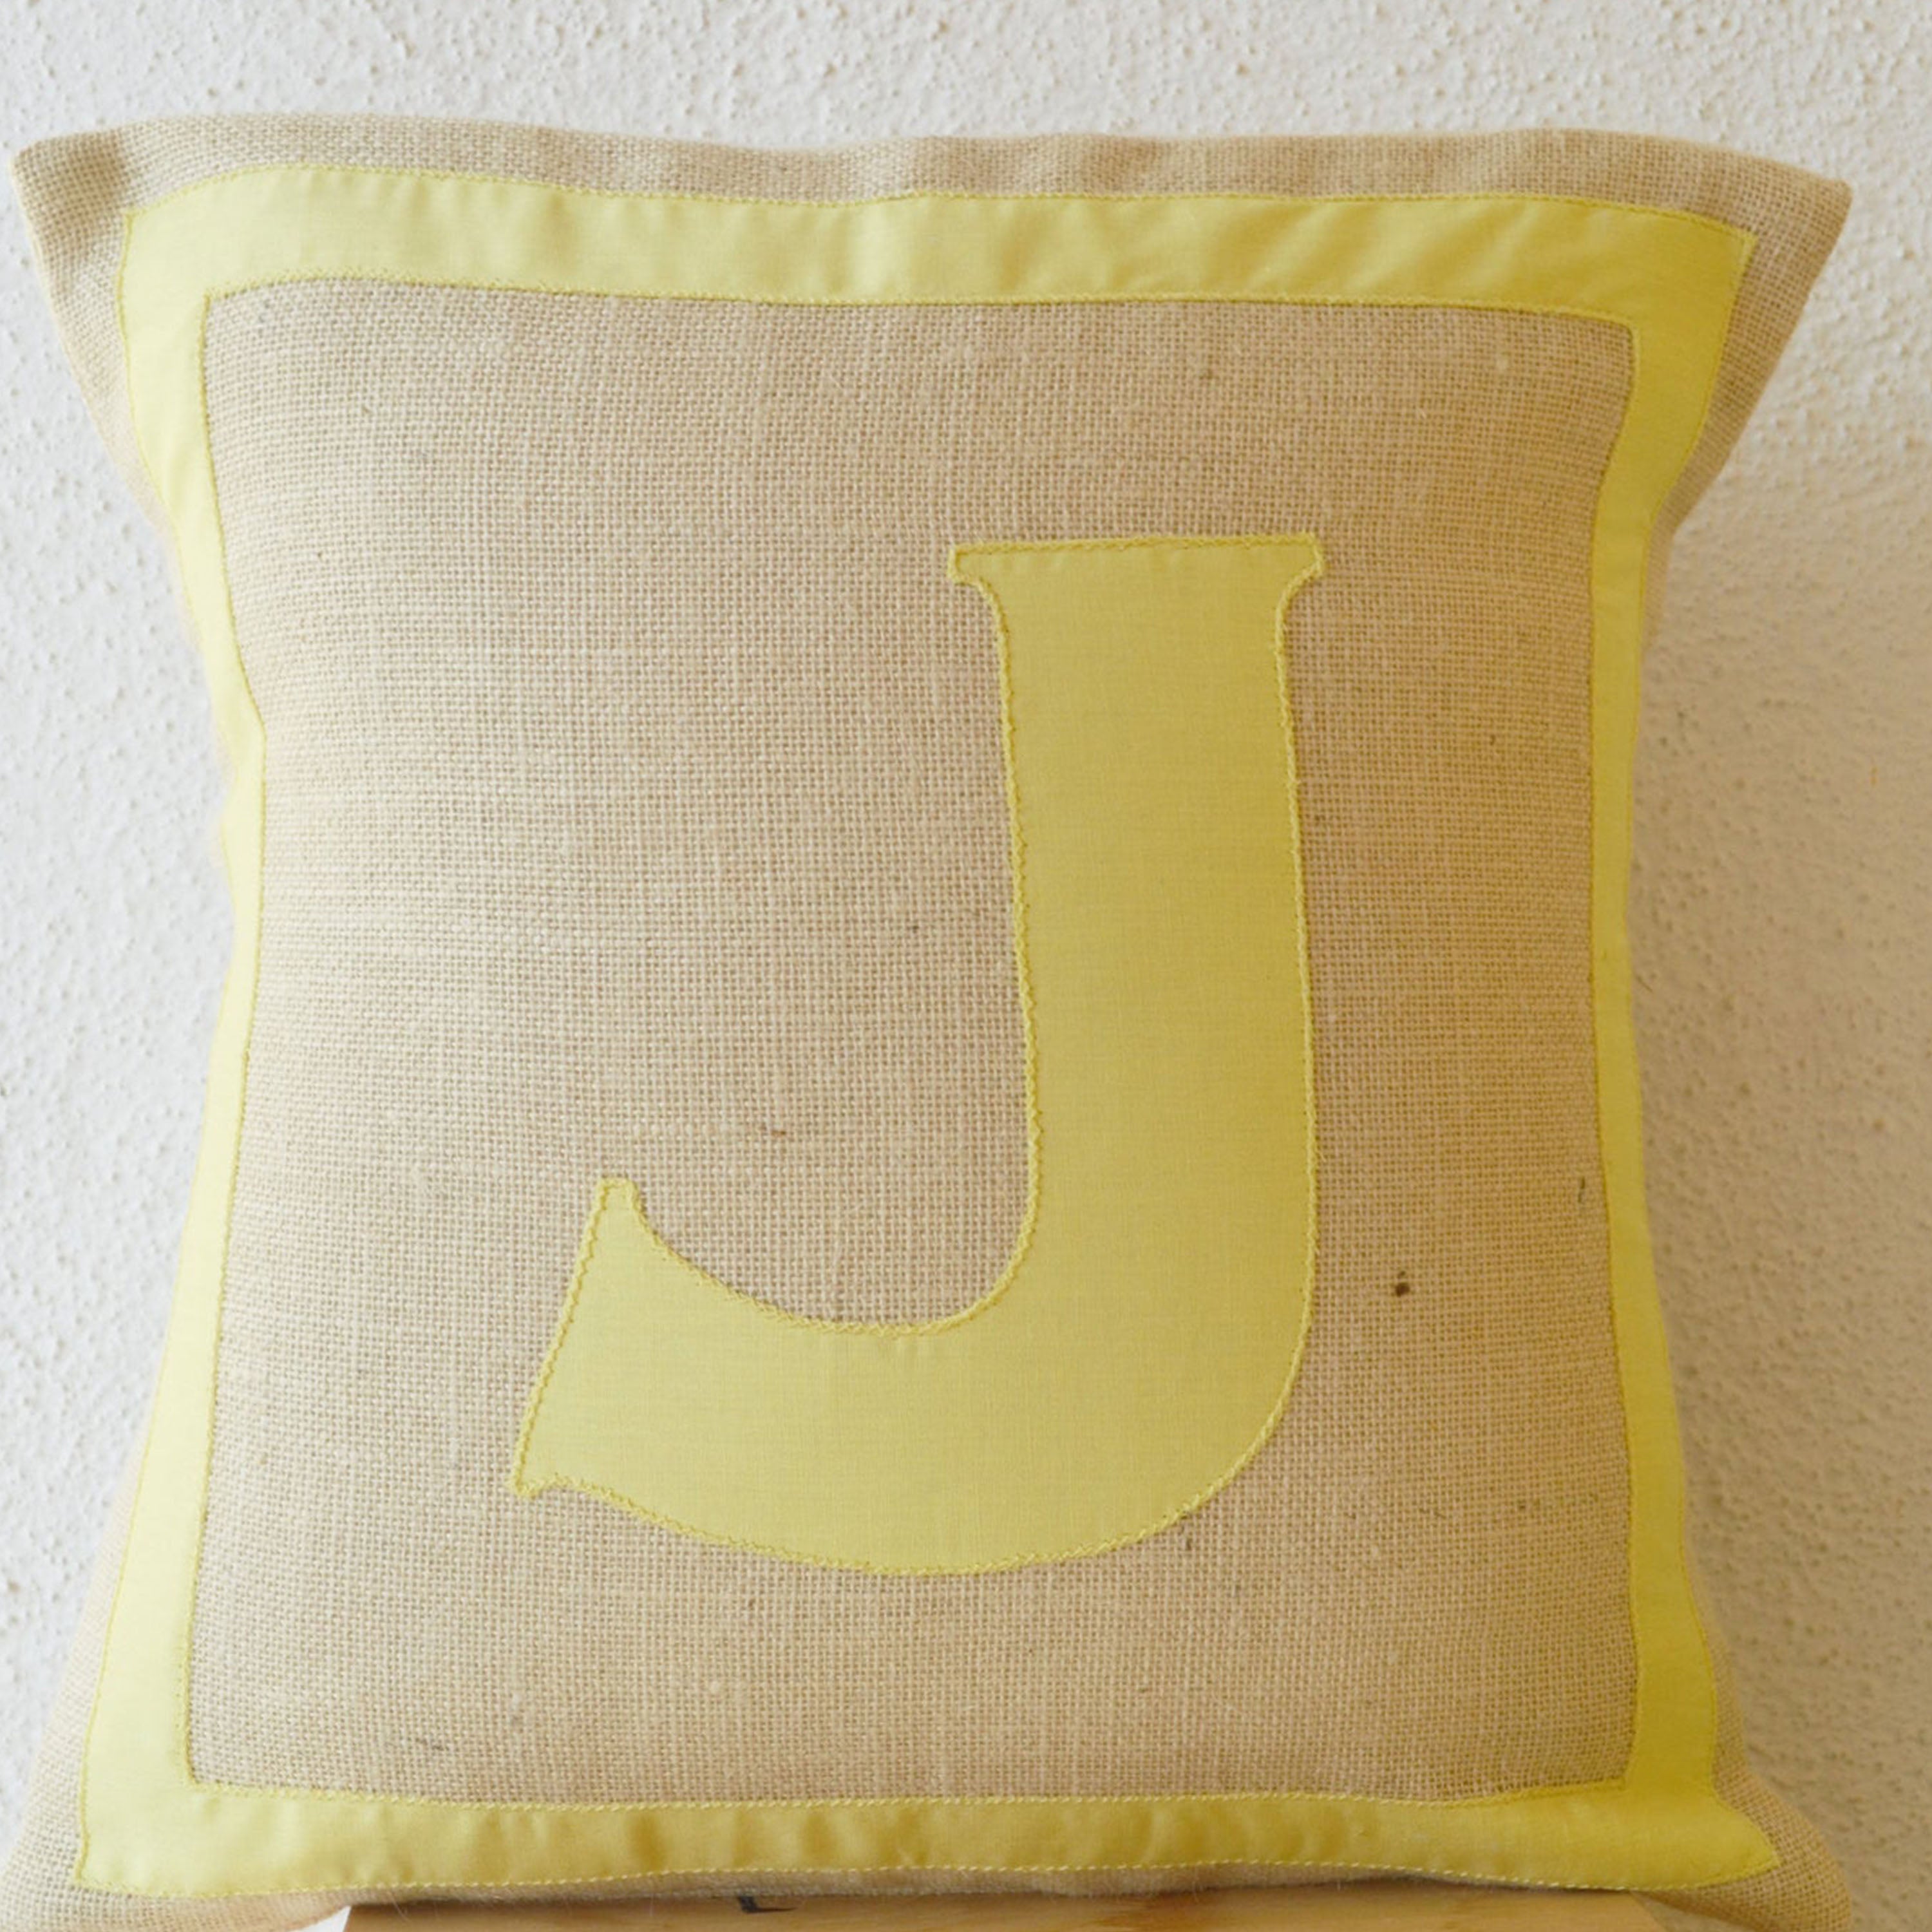 Personalized Monogram throw pillow- Burlap pillows- Yellow cotton monogram cushion - cotton applique - Decorative throw pillow- 16x16 pillow